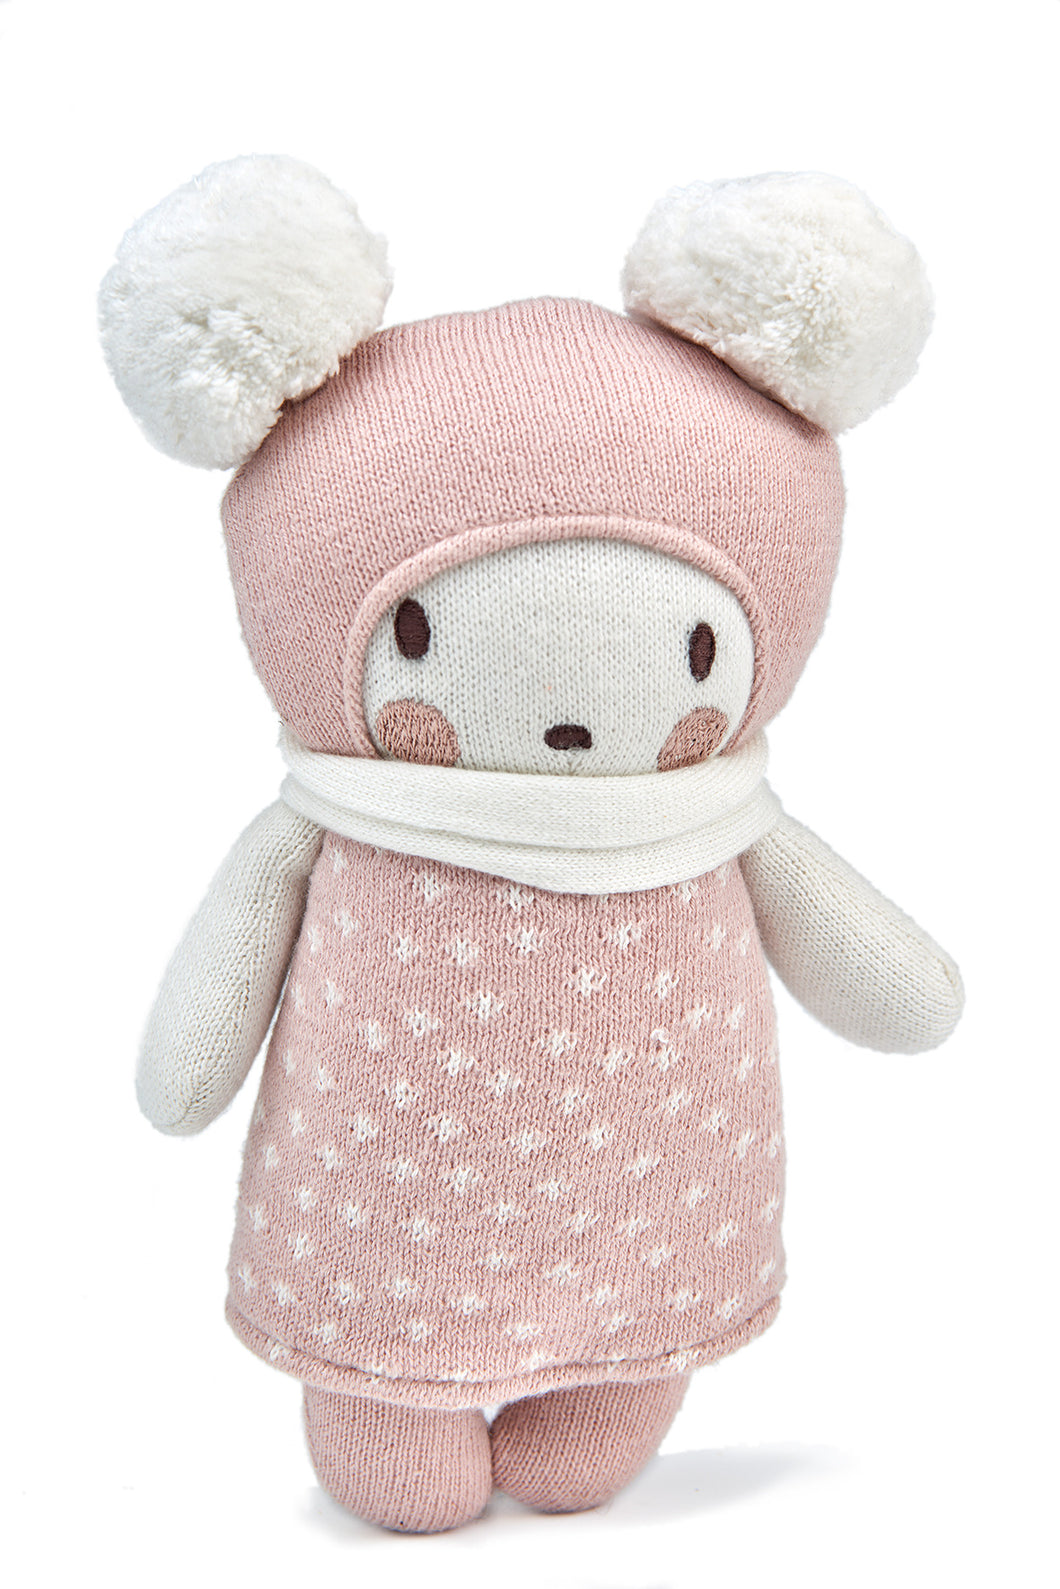 Threadbear Designs Baby Bella Knitted Doll